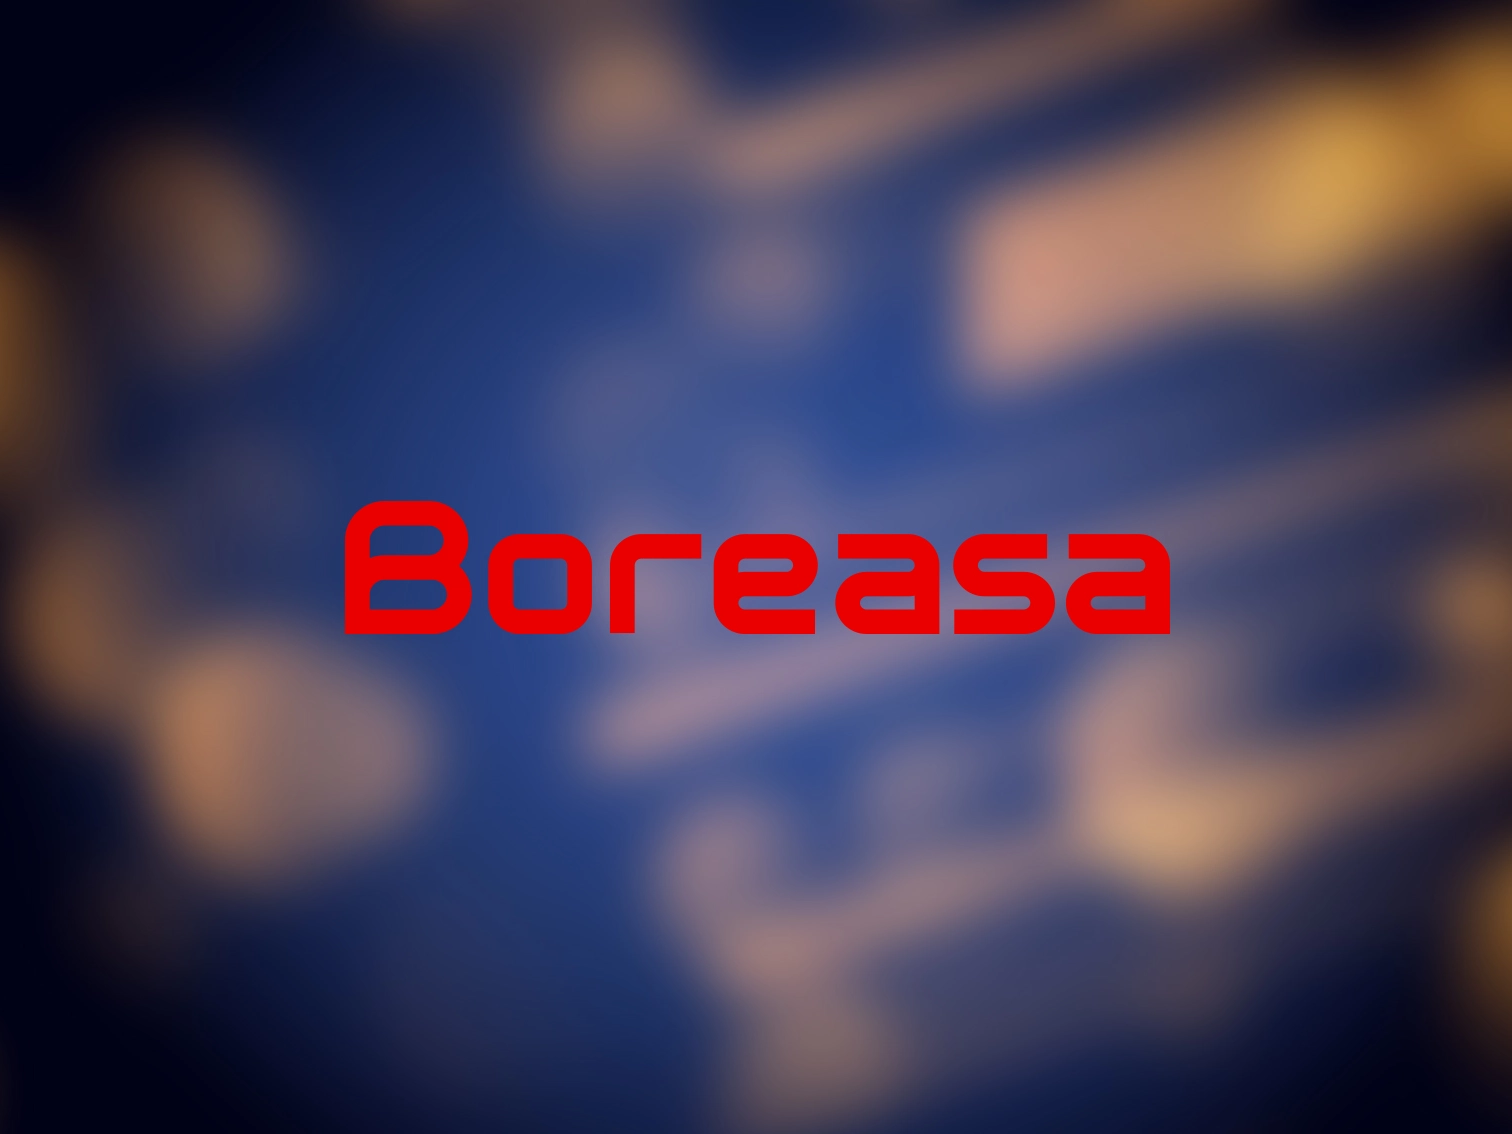 美迈国际推出 Boreasa 品牌